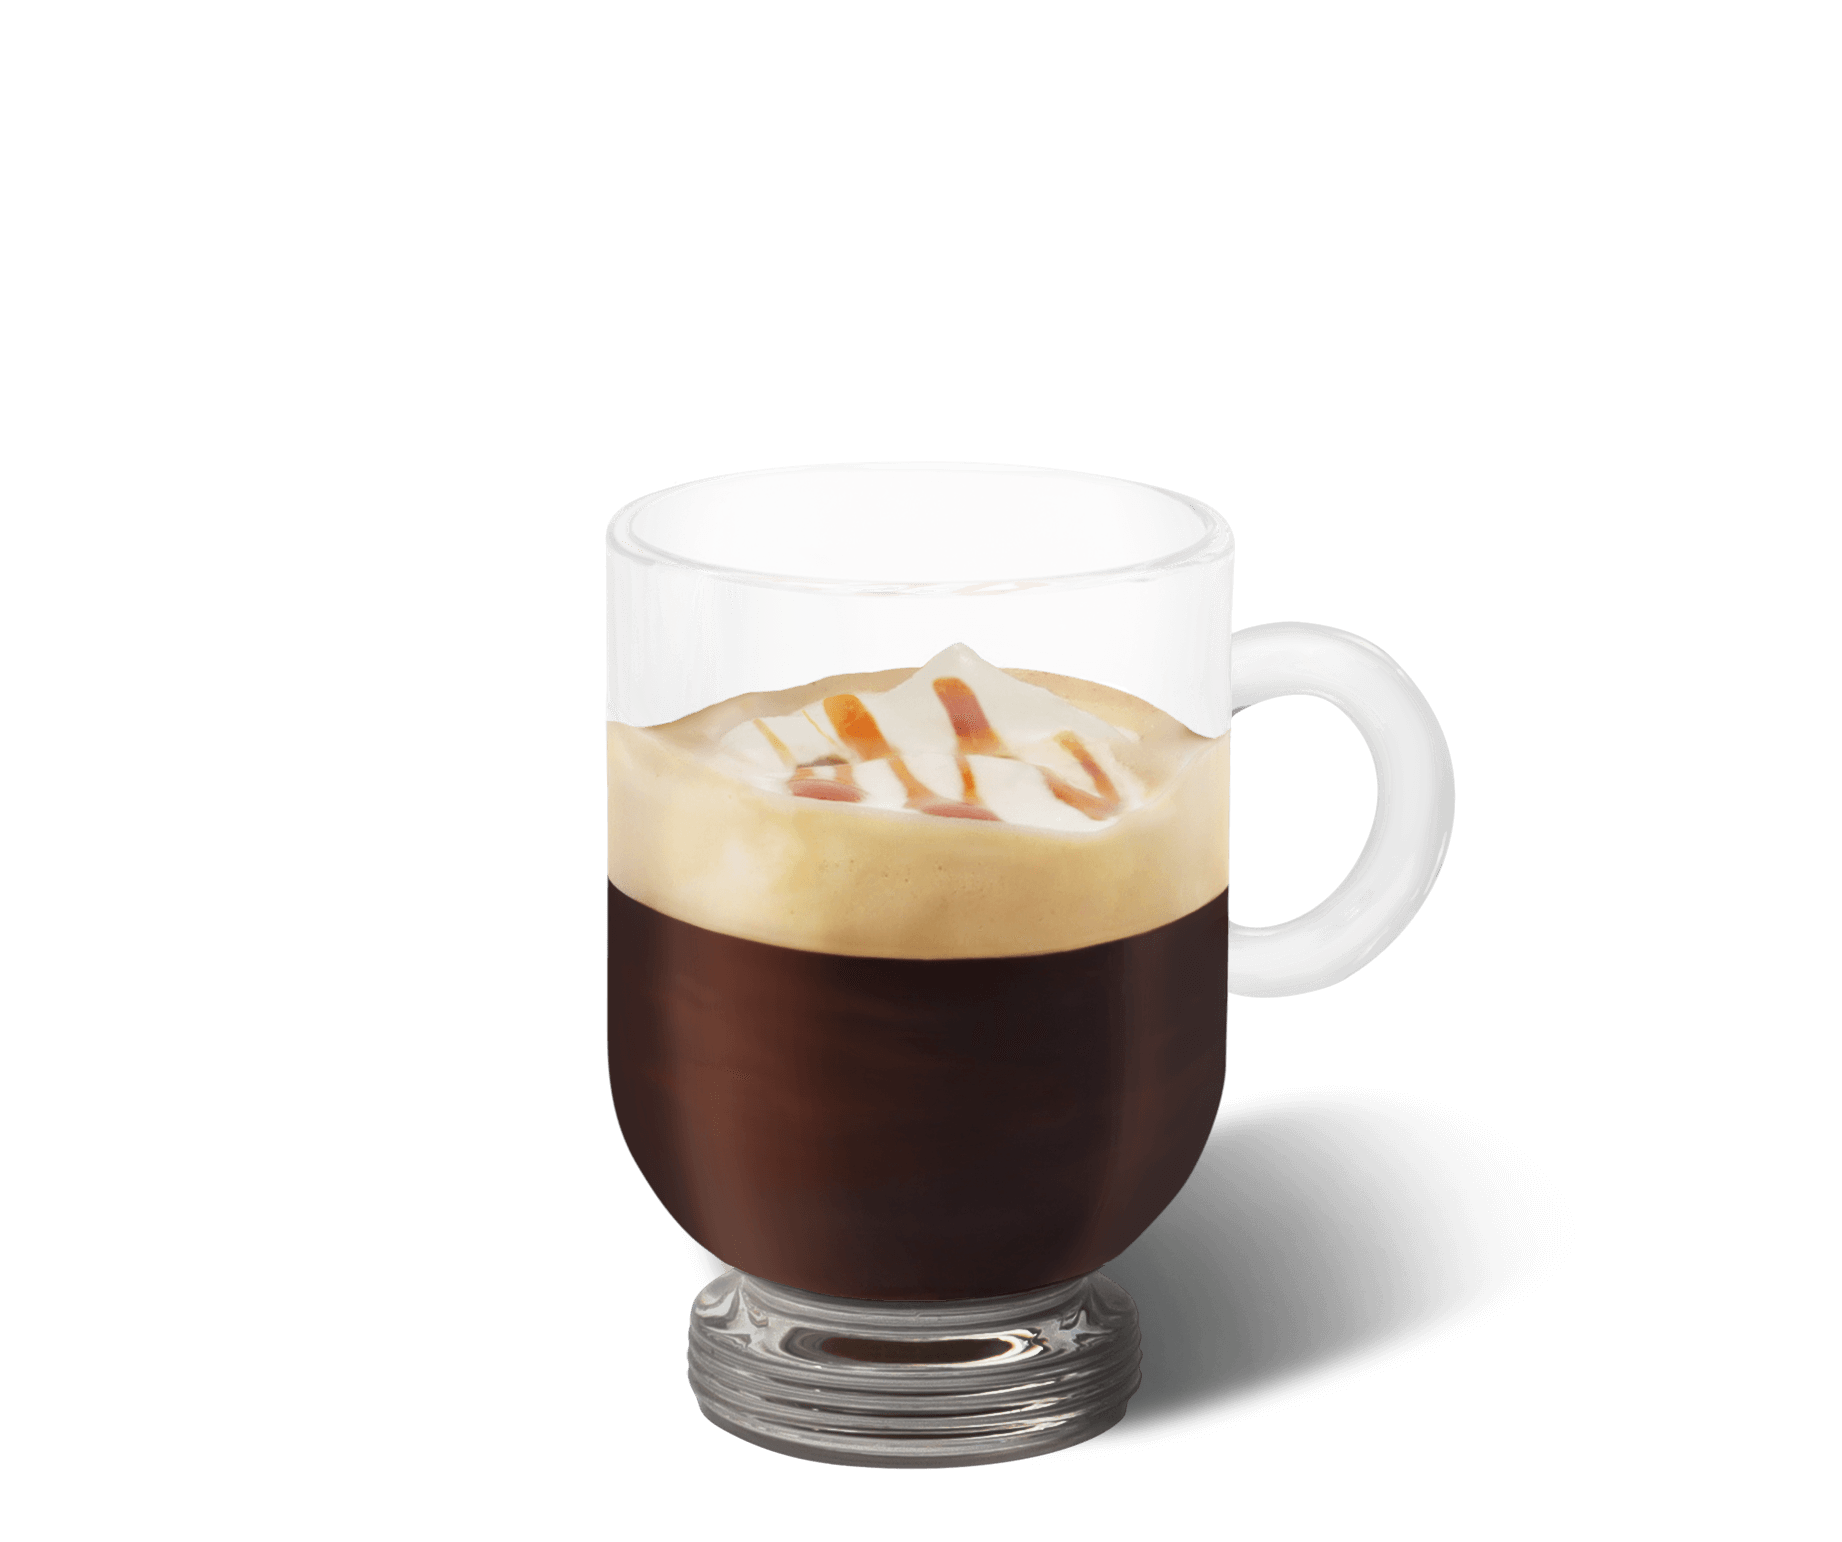 Espresso Con Panna Coffee Cup